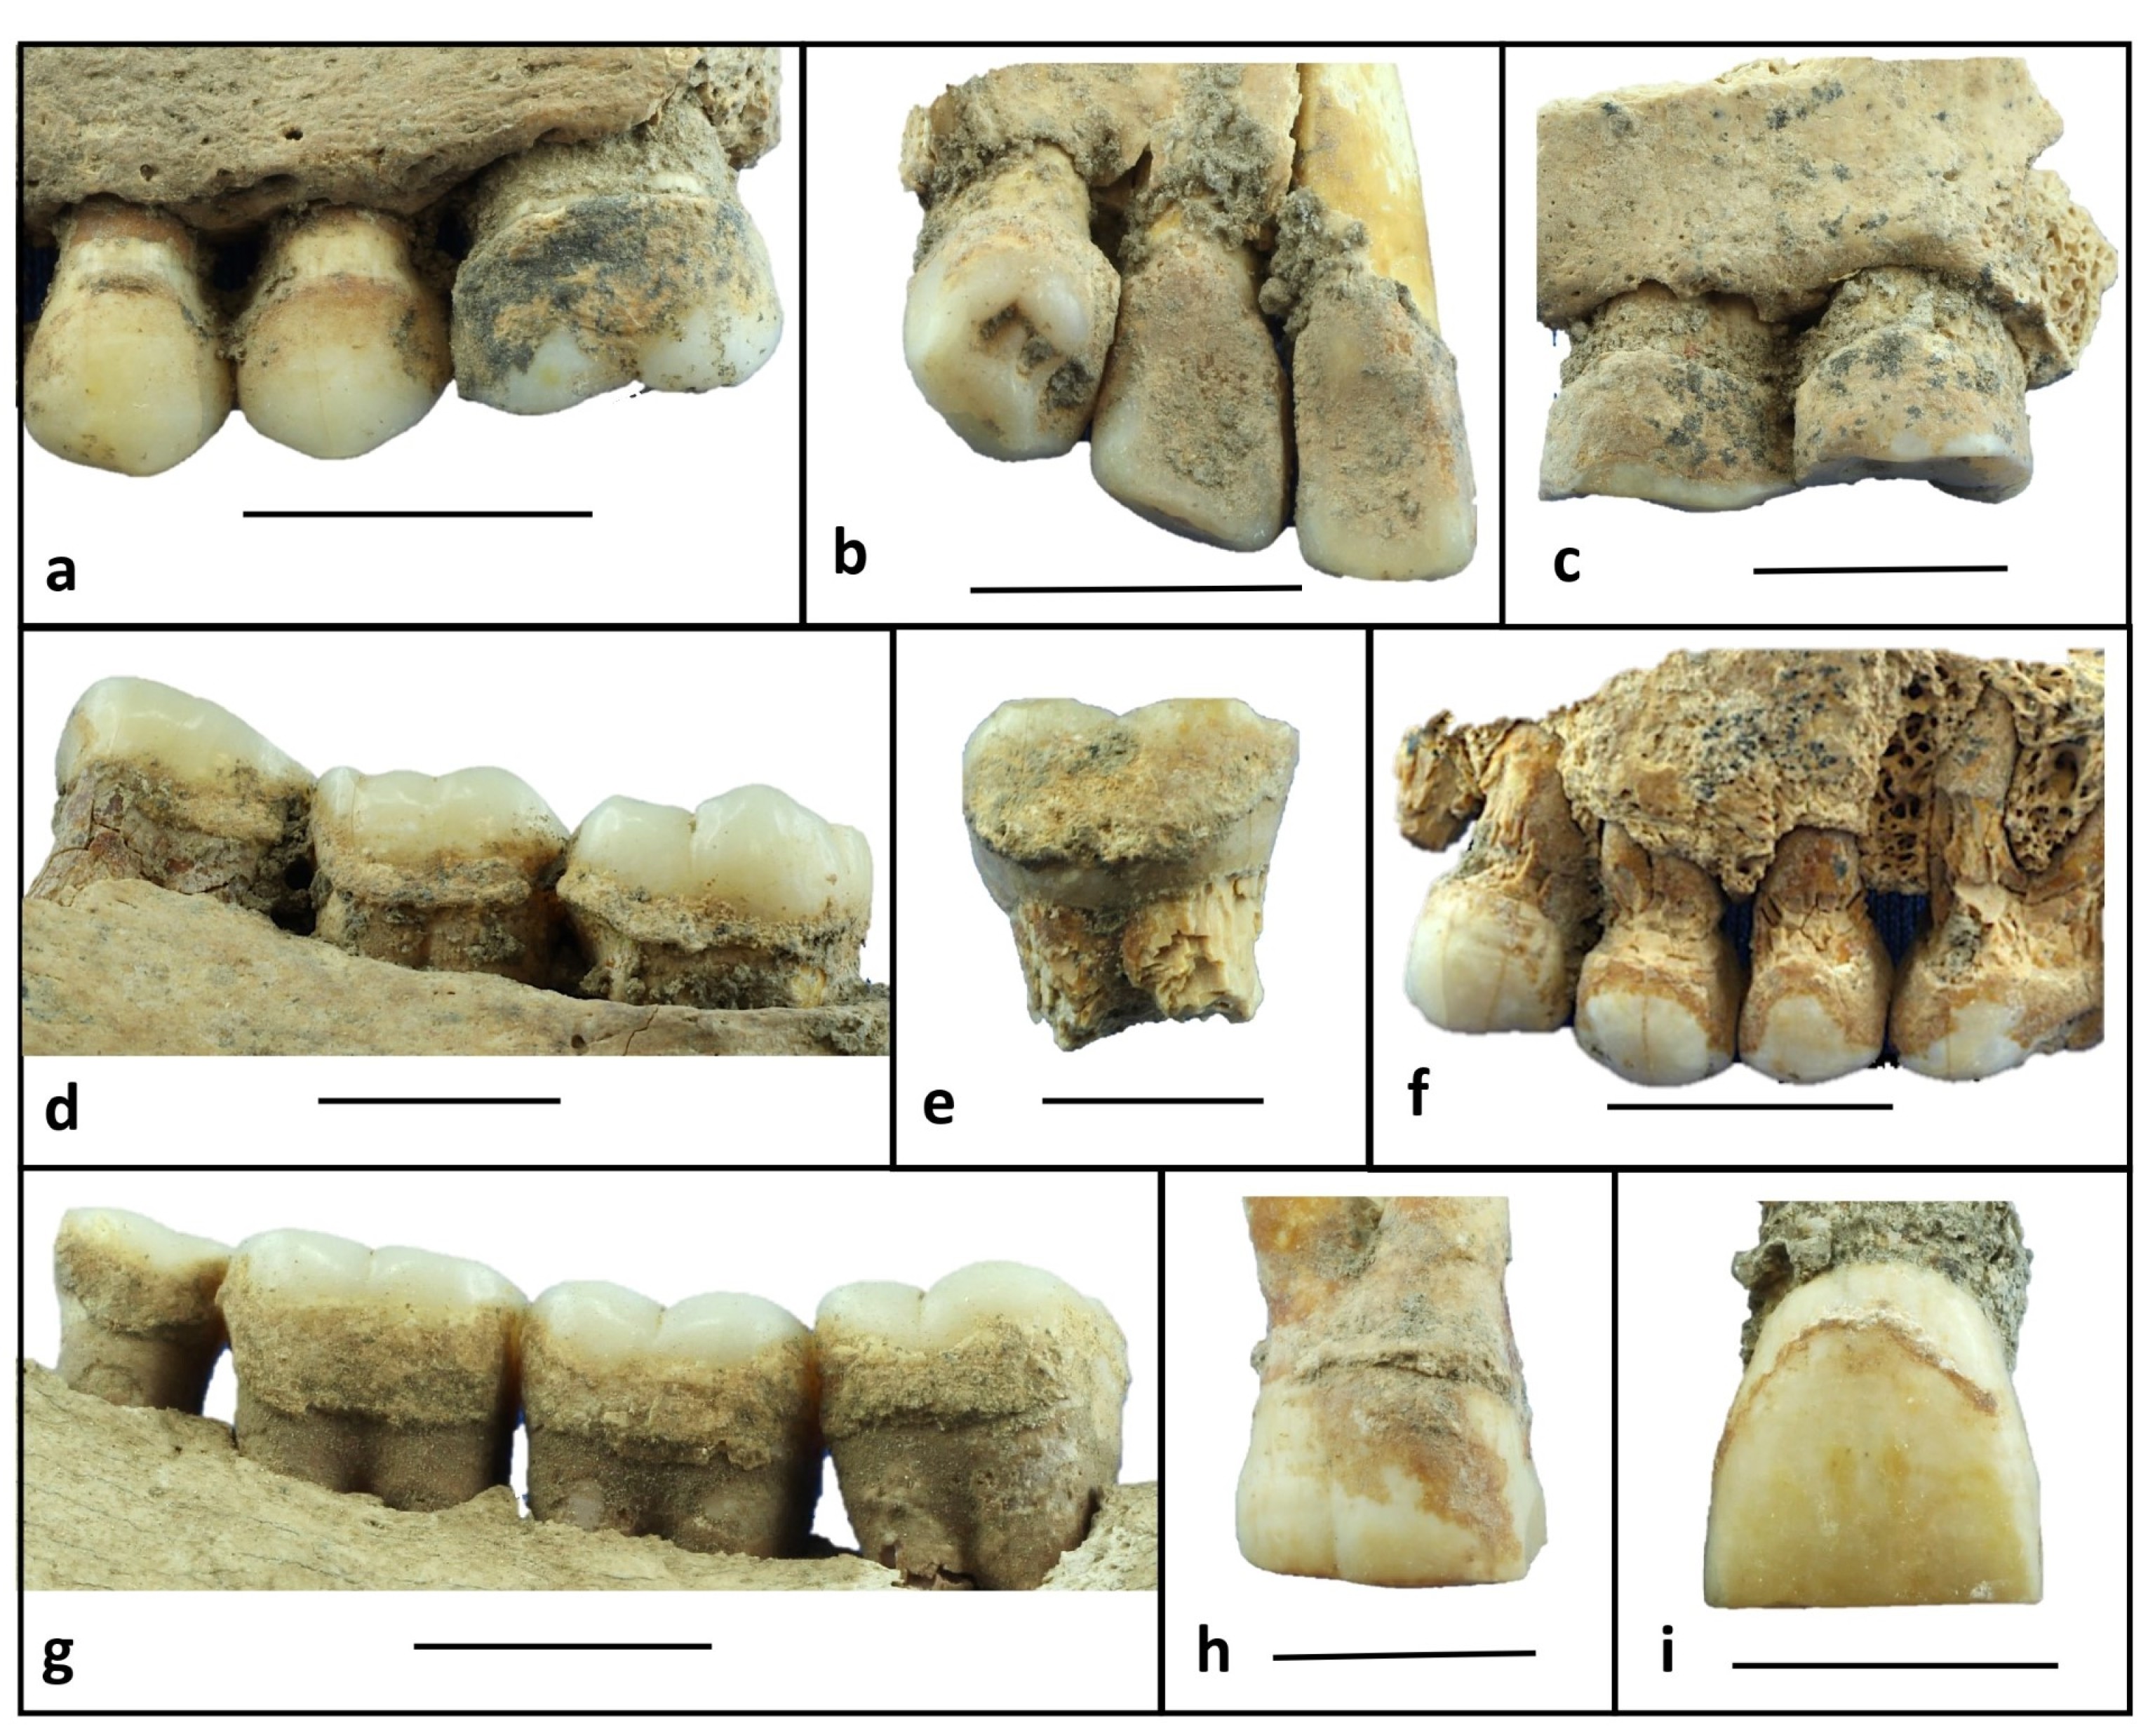 il tartaro dentale di 6.000 anni fa rivela la dieta neolitica